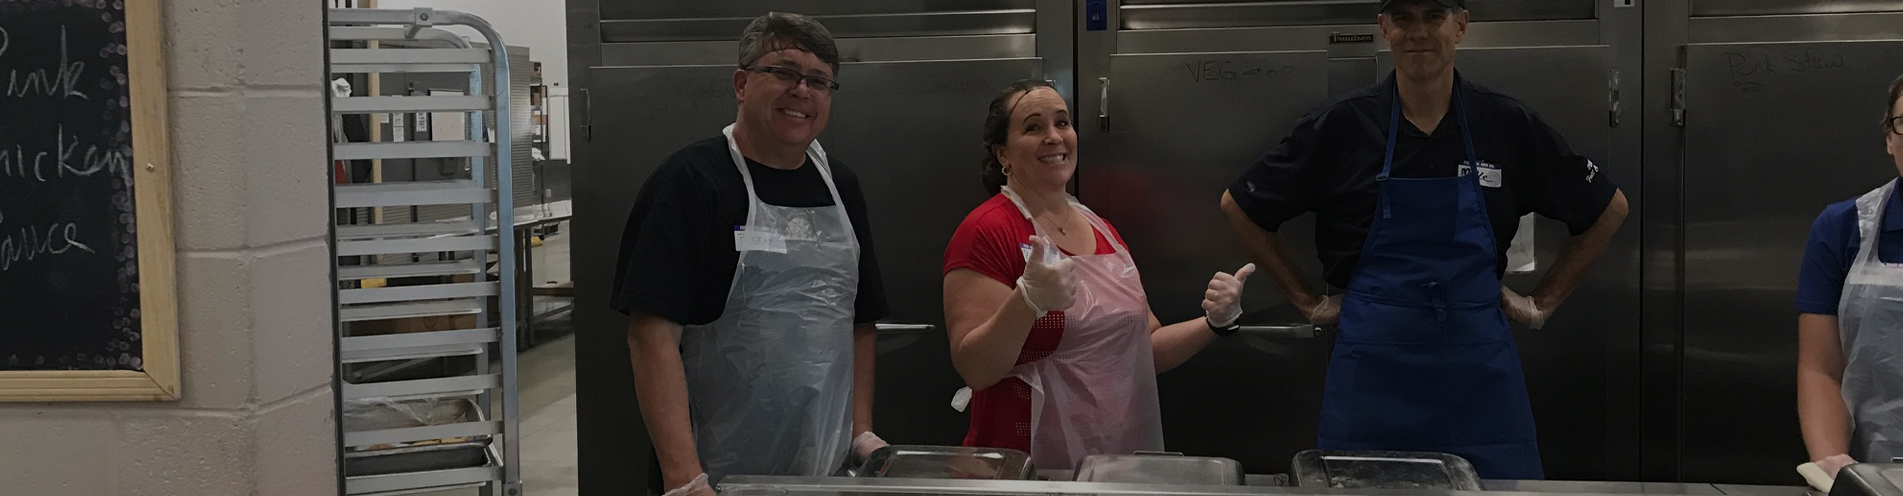 Sagicor employee volunteers help to prepare meals at St. Vincent de Paul in Phoenix